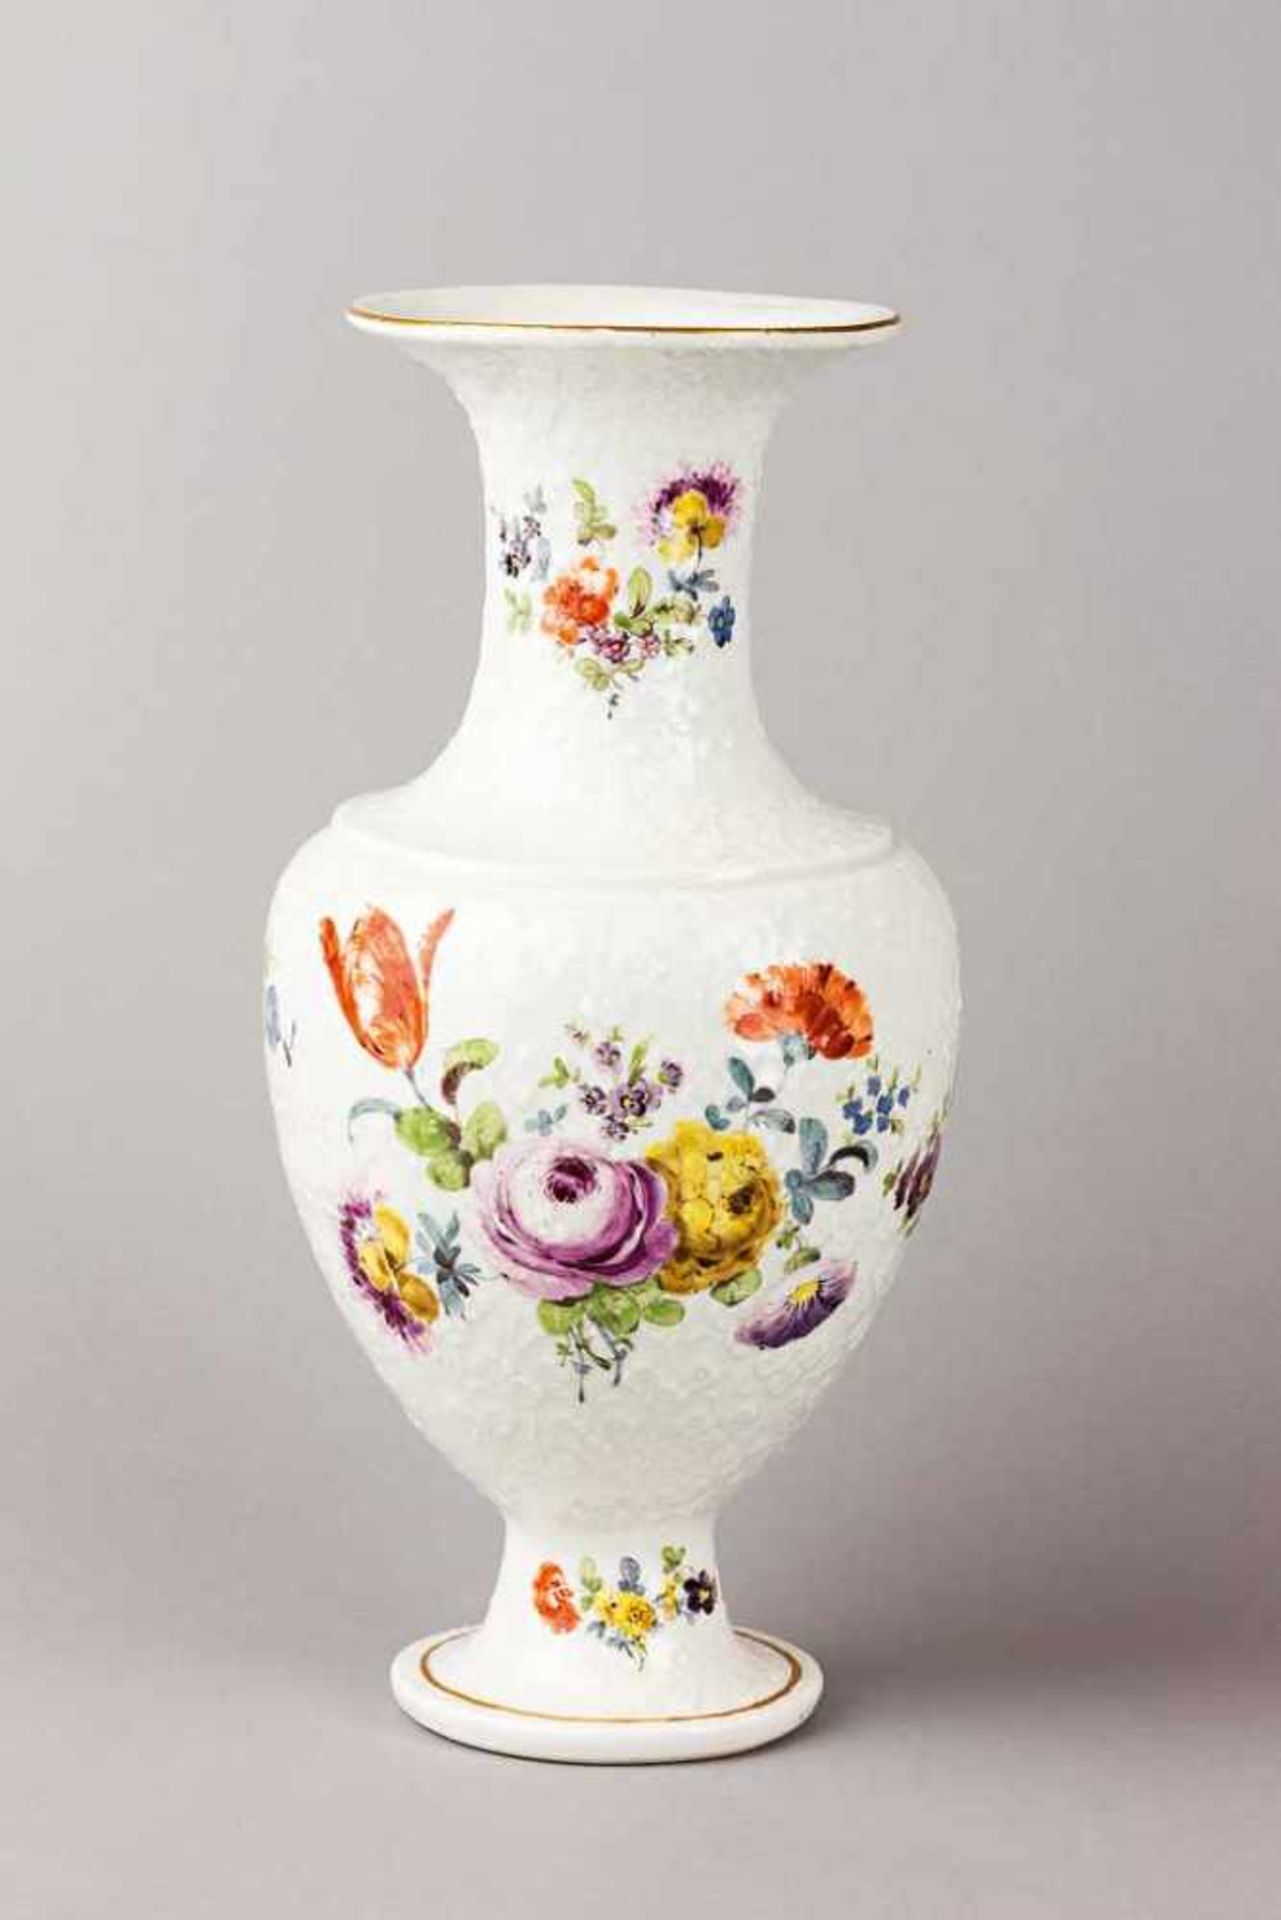 Vergissmeinnicht-Vase. Balusterform. Ungewöhnliches Relief mit Blüten und Ranken. Polychrome - Bild 2 aus 2